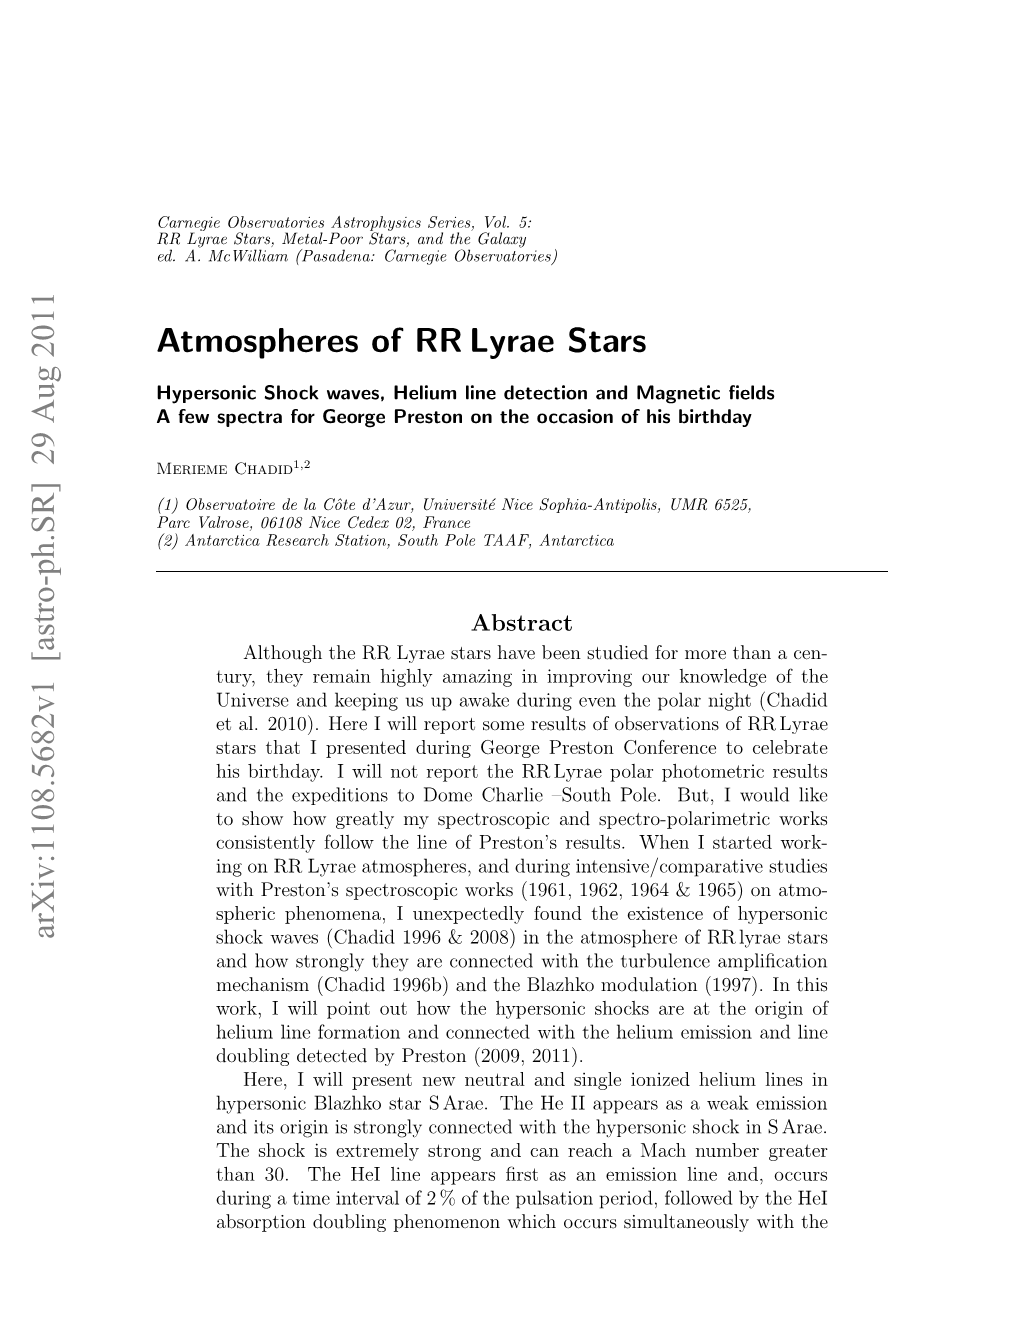 Atmospheres of RR Lyrae Stars: Hypersonic Shock Waves, Helium